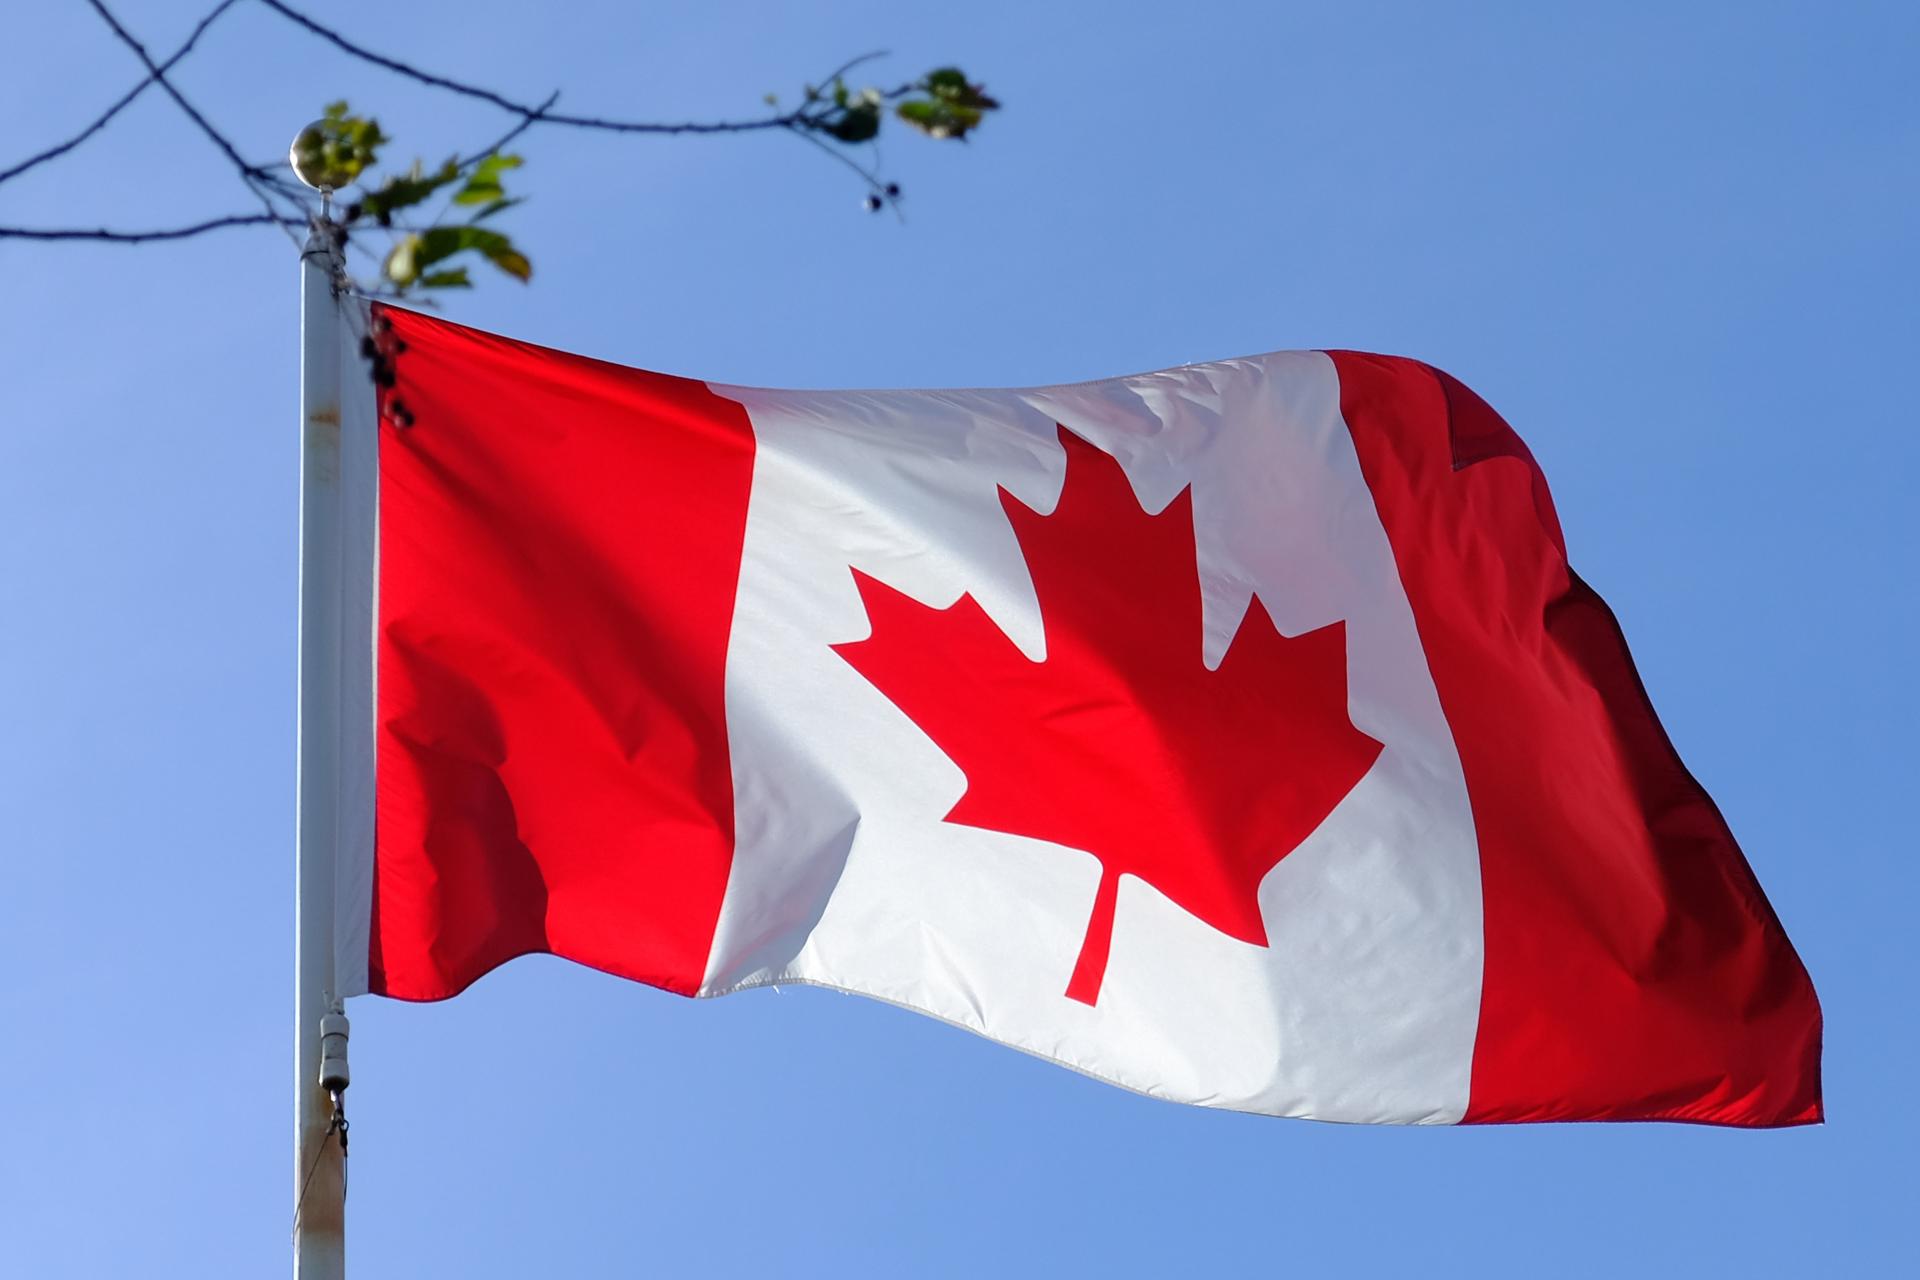 Le drapeau canadien avec comme emblème la feuille d'érable